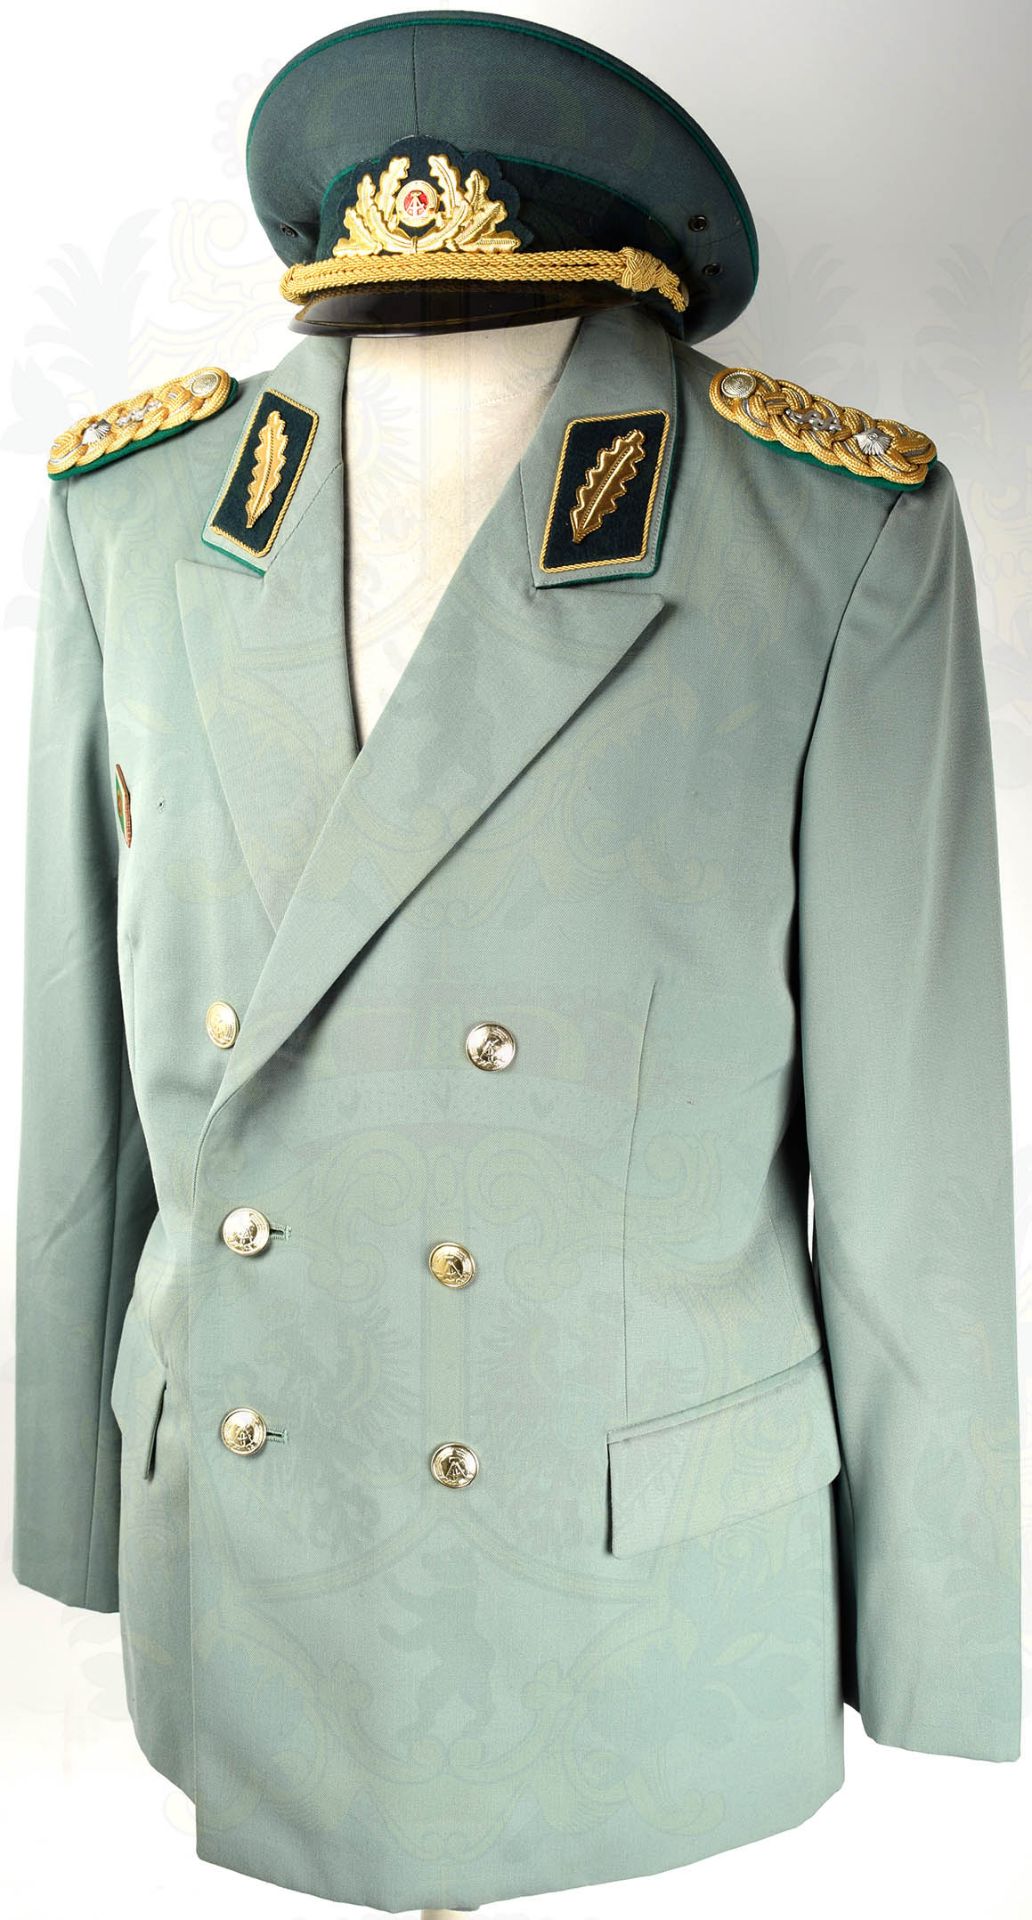 GESELLSCHAFTSUNIFORM GENERALMAJOR DER VP, Uniformrock aus graugrünen Tuch, mit 2 Taschen u. - Bild 2 aus 10